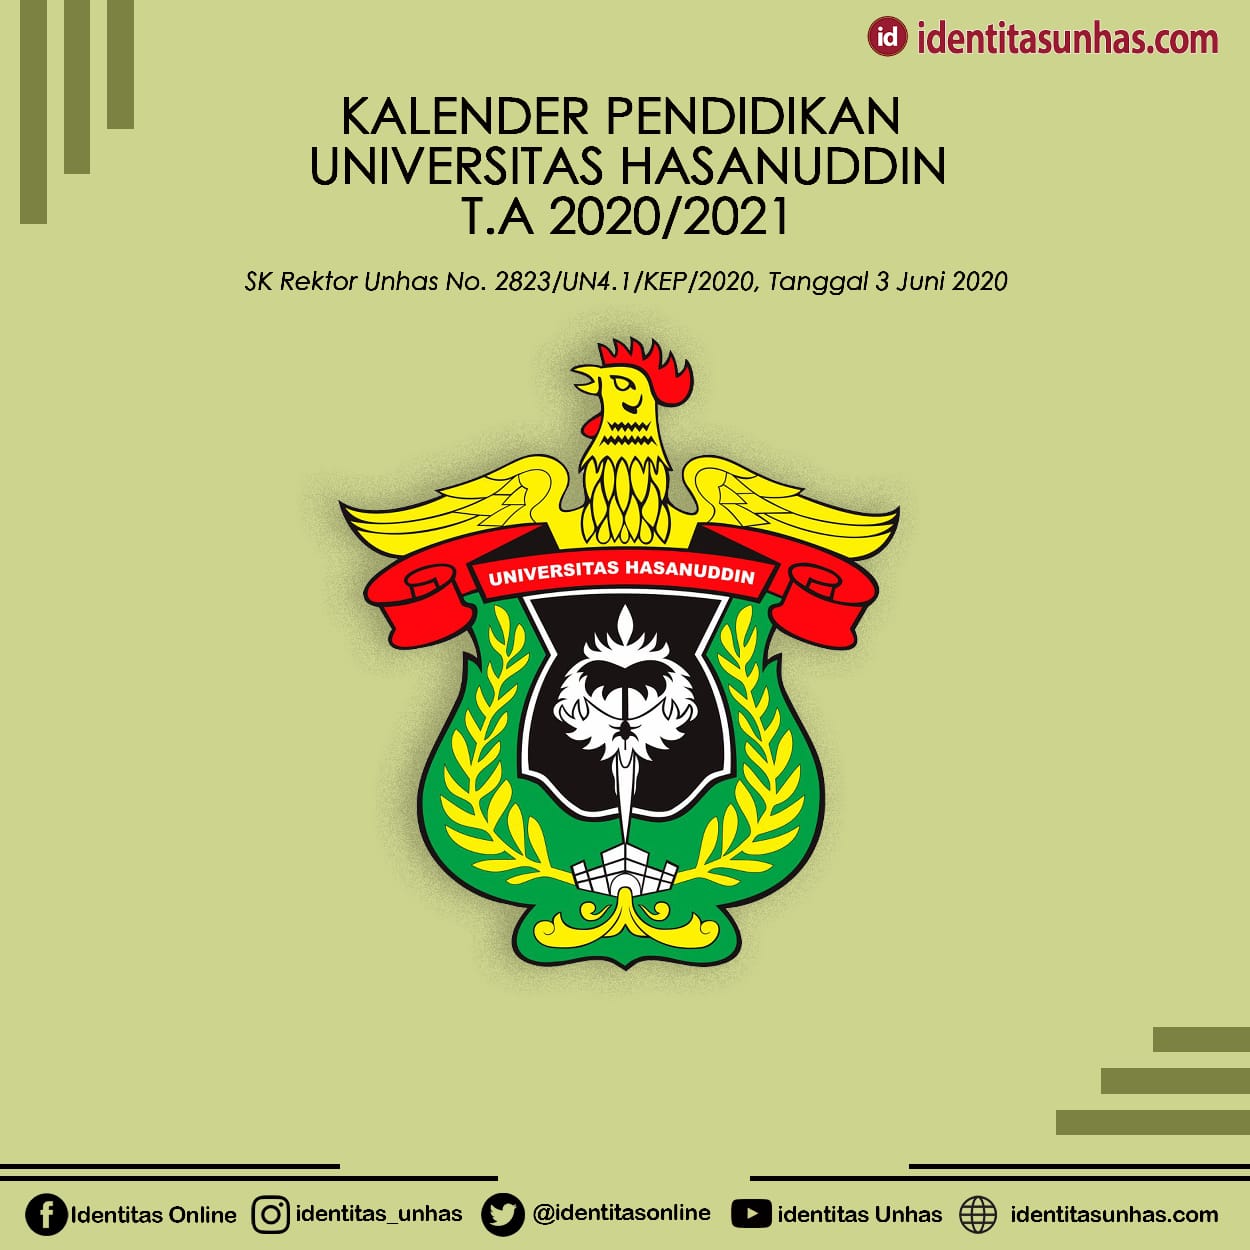 Infografis: Kalender Akademik Unhas Semester Akhir Ta. 2020/2021 - Identitas Unhas